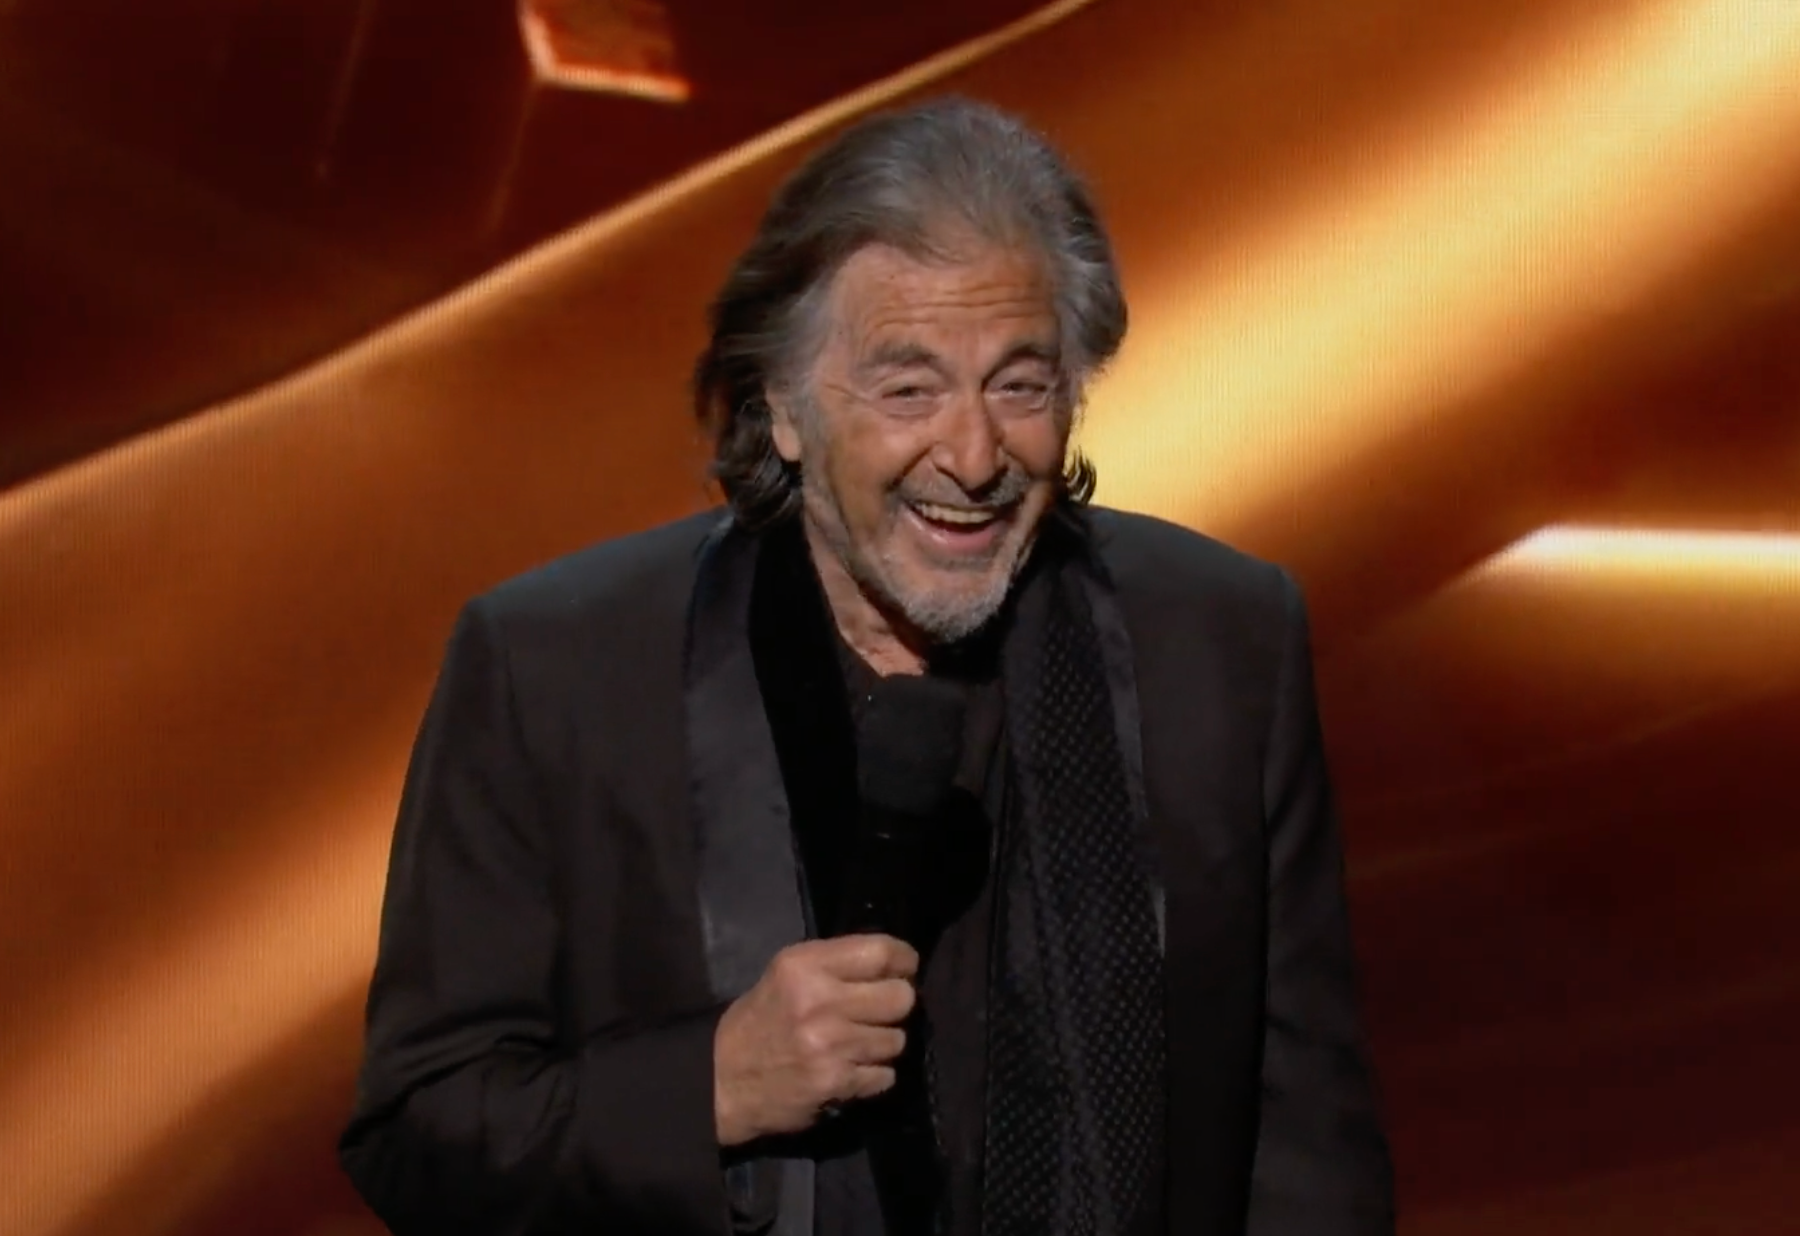 Al Pacino at the Game Awards 2022